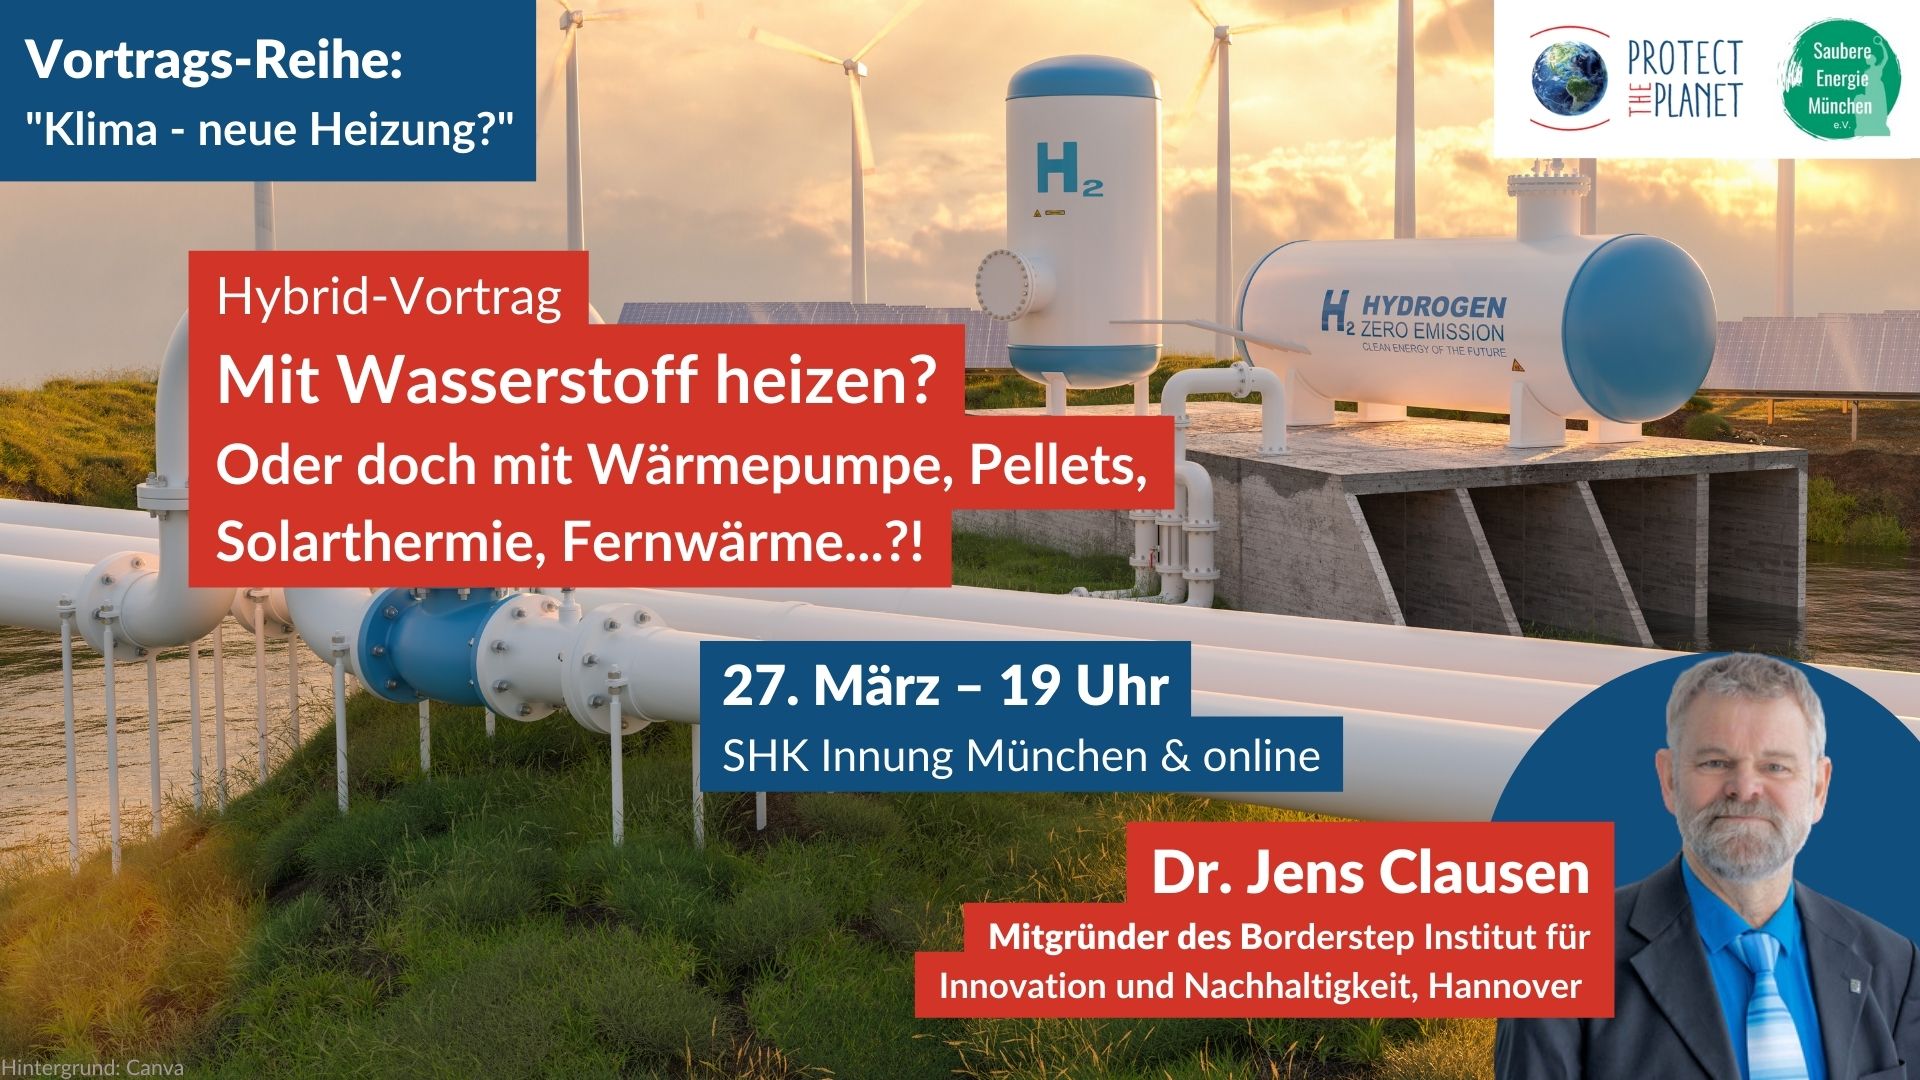 Man sieht als Symbolbild für "Mit Wasserstoff Heizen" Tanks mit der Aufschrift "H2" und Transportrohe vor Windrädern und Solaranlagen im Grünen bei Sonnenuntergang. Dazu ein Porträt des Vortragenden Dr. Jens Clausen.